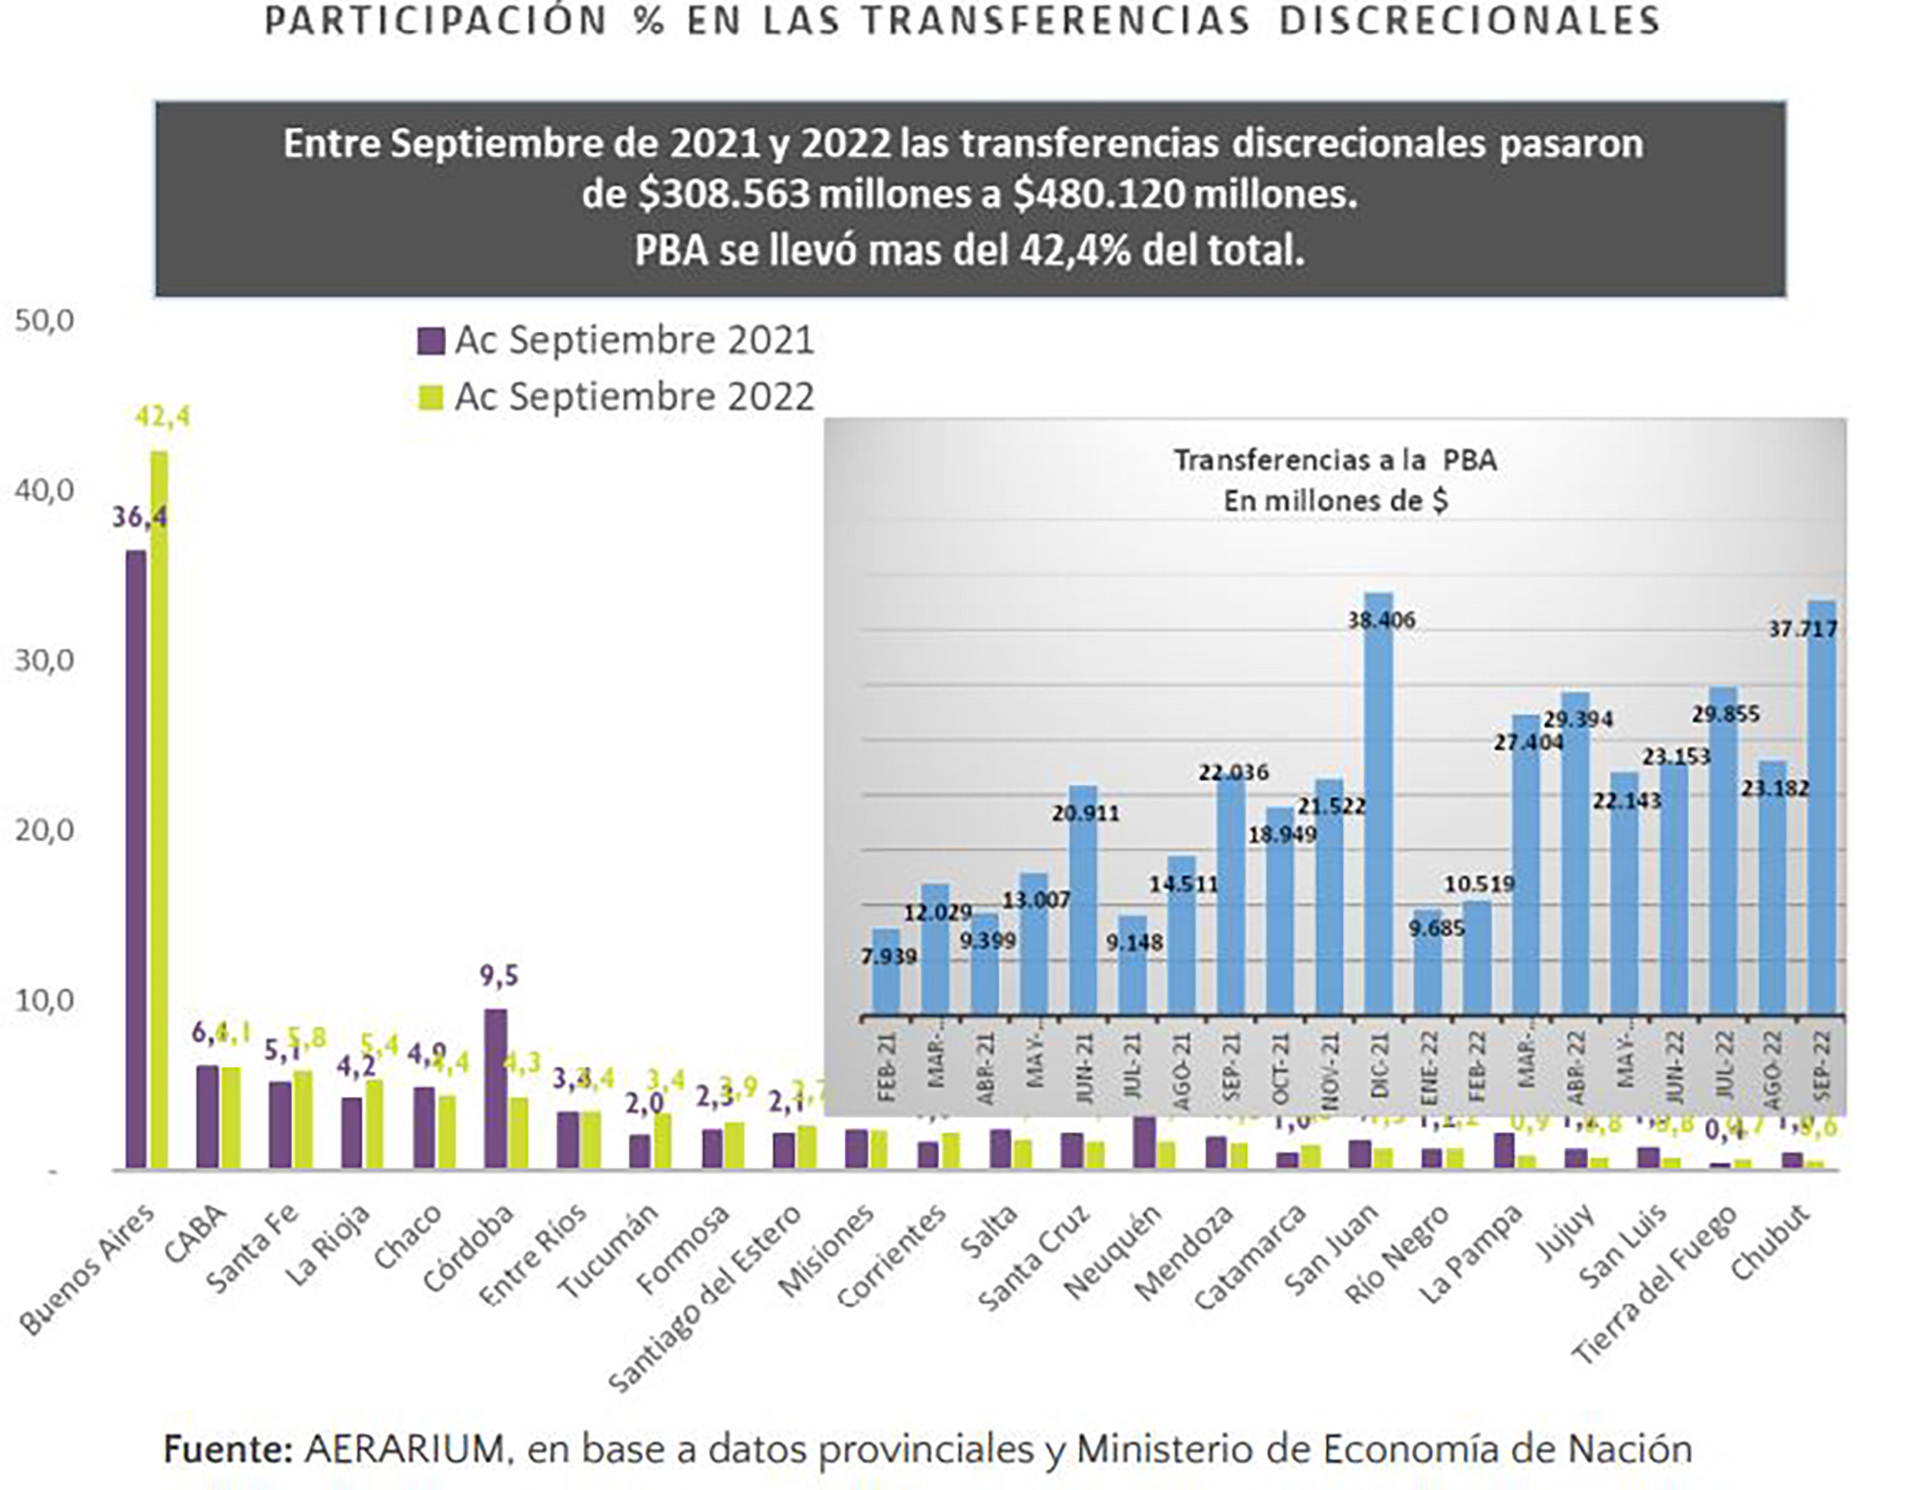 El gráfico muestra la disparidad en el reparto de fondos asignados con criterio "político" y la evolución de los envíos mensuales a Buenos Aires